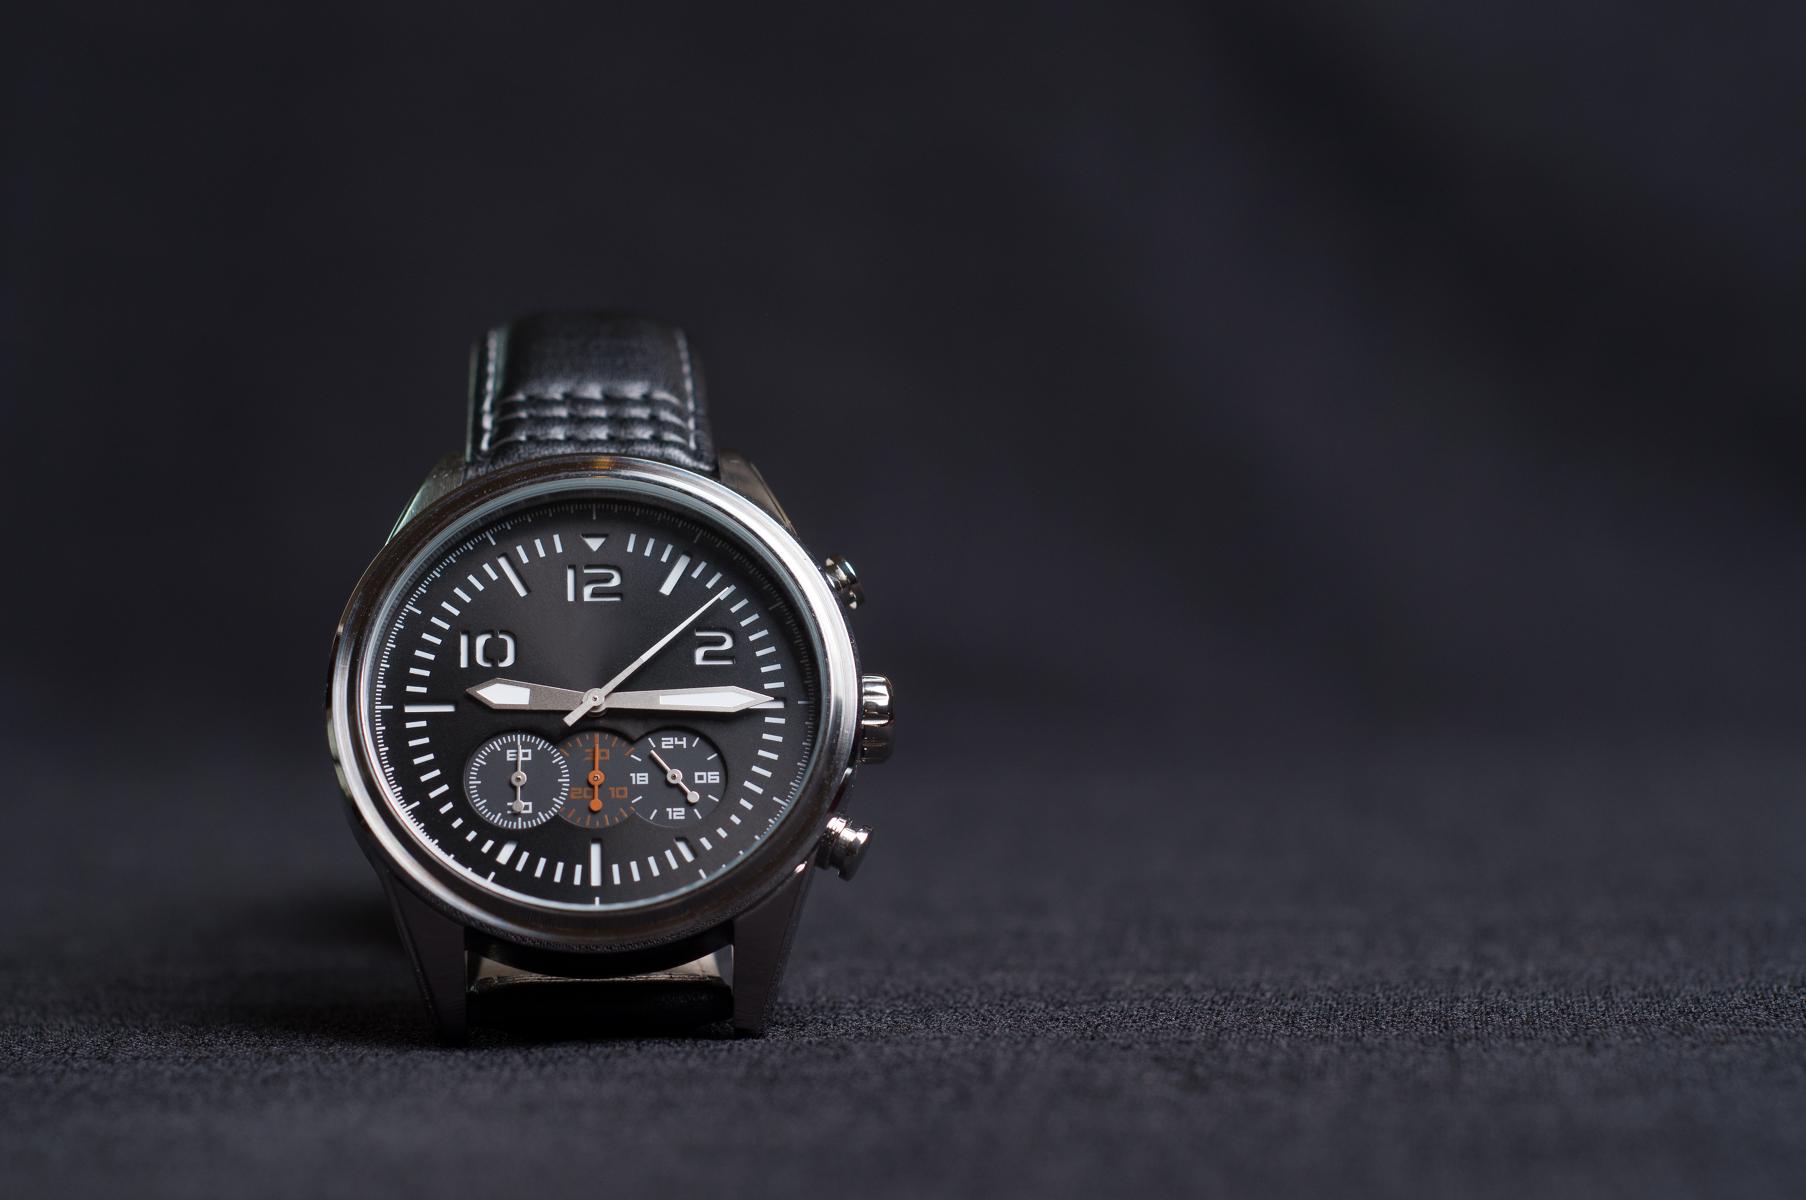 Grey Watch